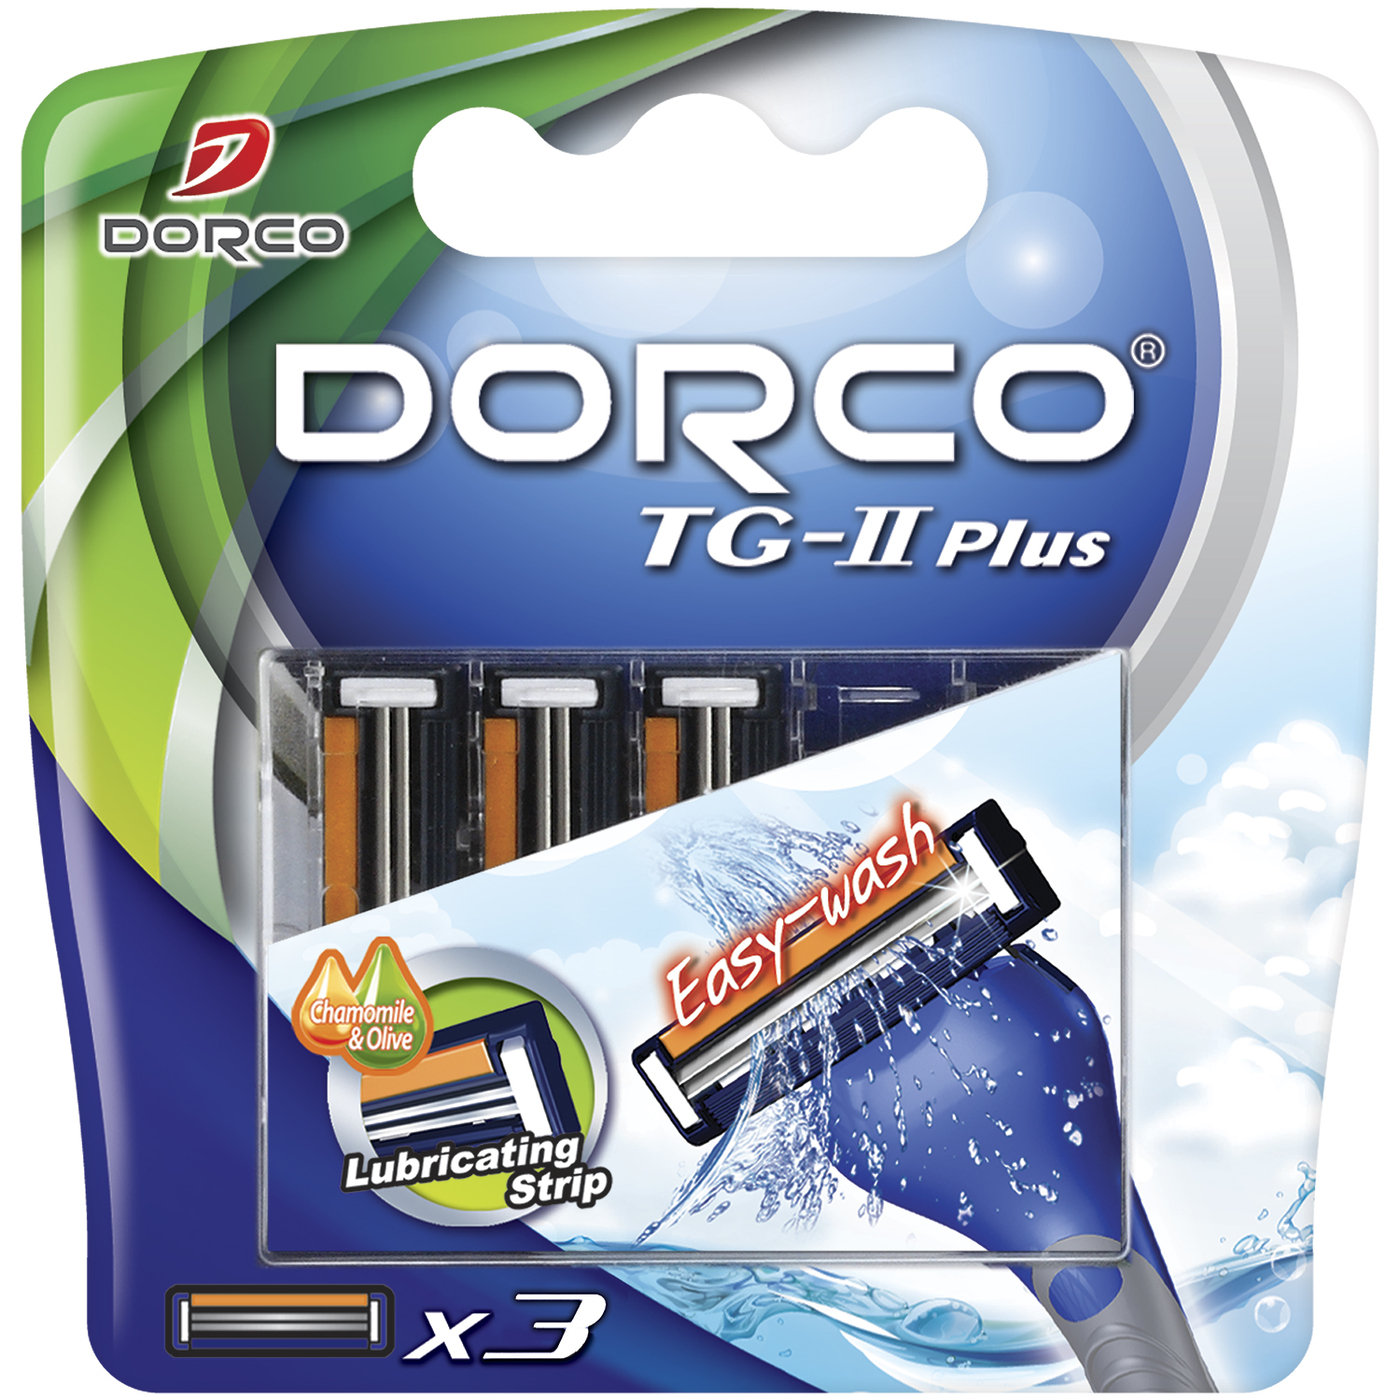 Кассеты dorco. Сменные кассеты Dorco TG-II Plus. Сменные лезвия,Dorco TG-II Plus 10шт. Dorco бритвенный станок TG-II Plus станок + 5 кассет. Dorco tg2 Plus сменные кассеты.